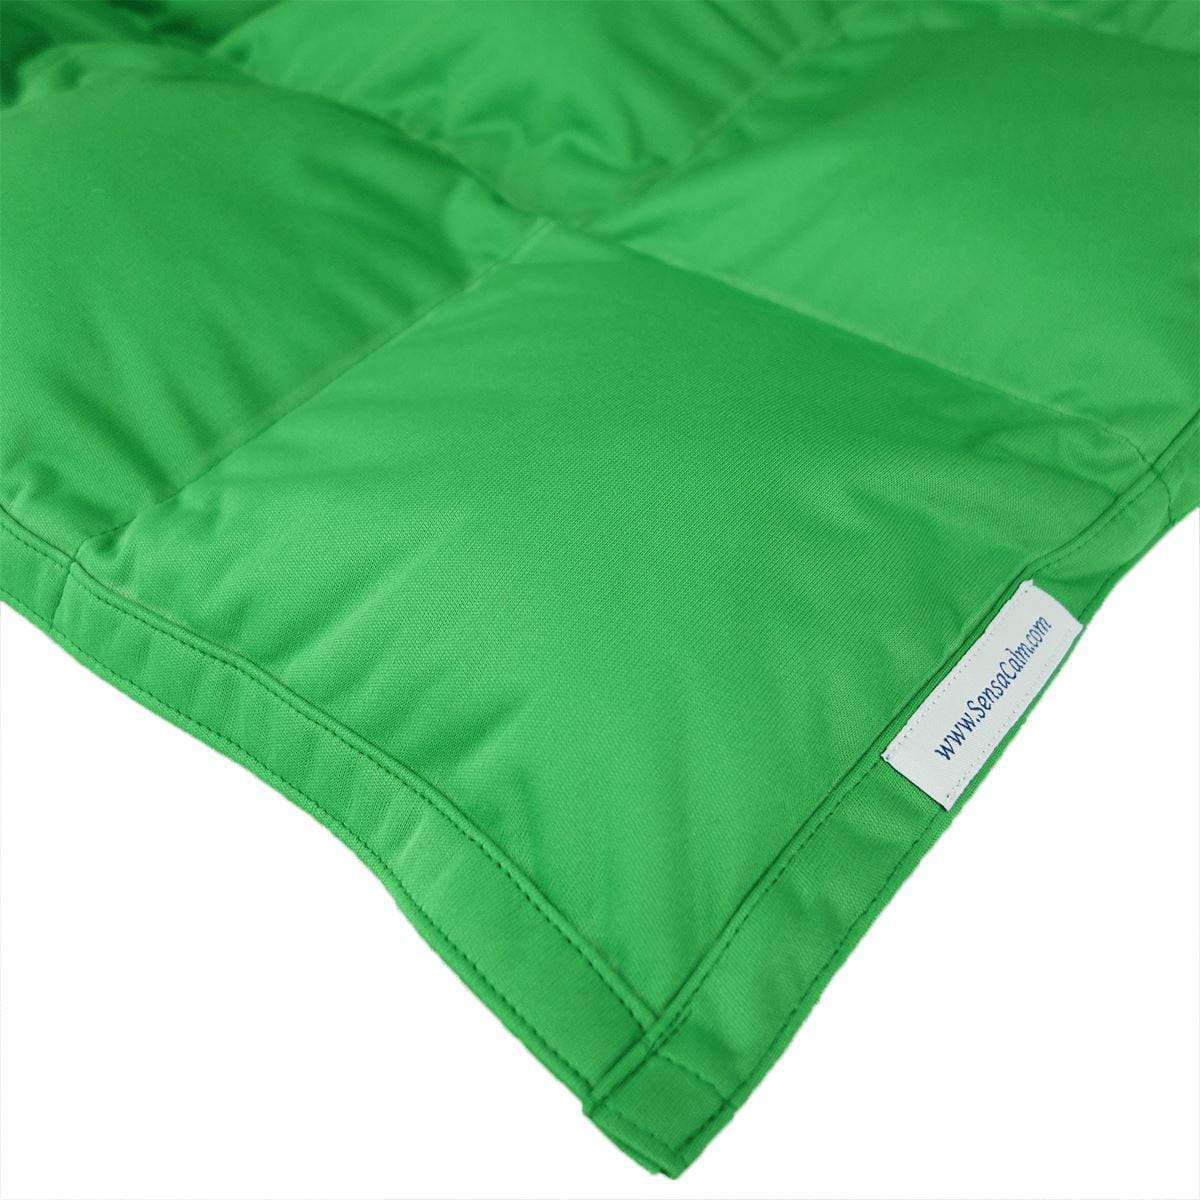 Waterproof Weighted Blanket - Green